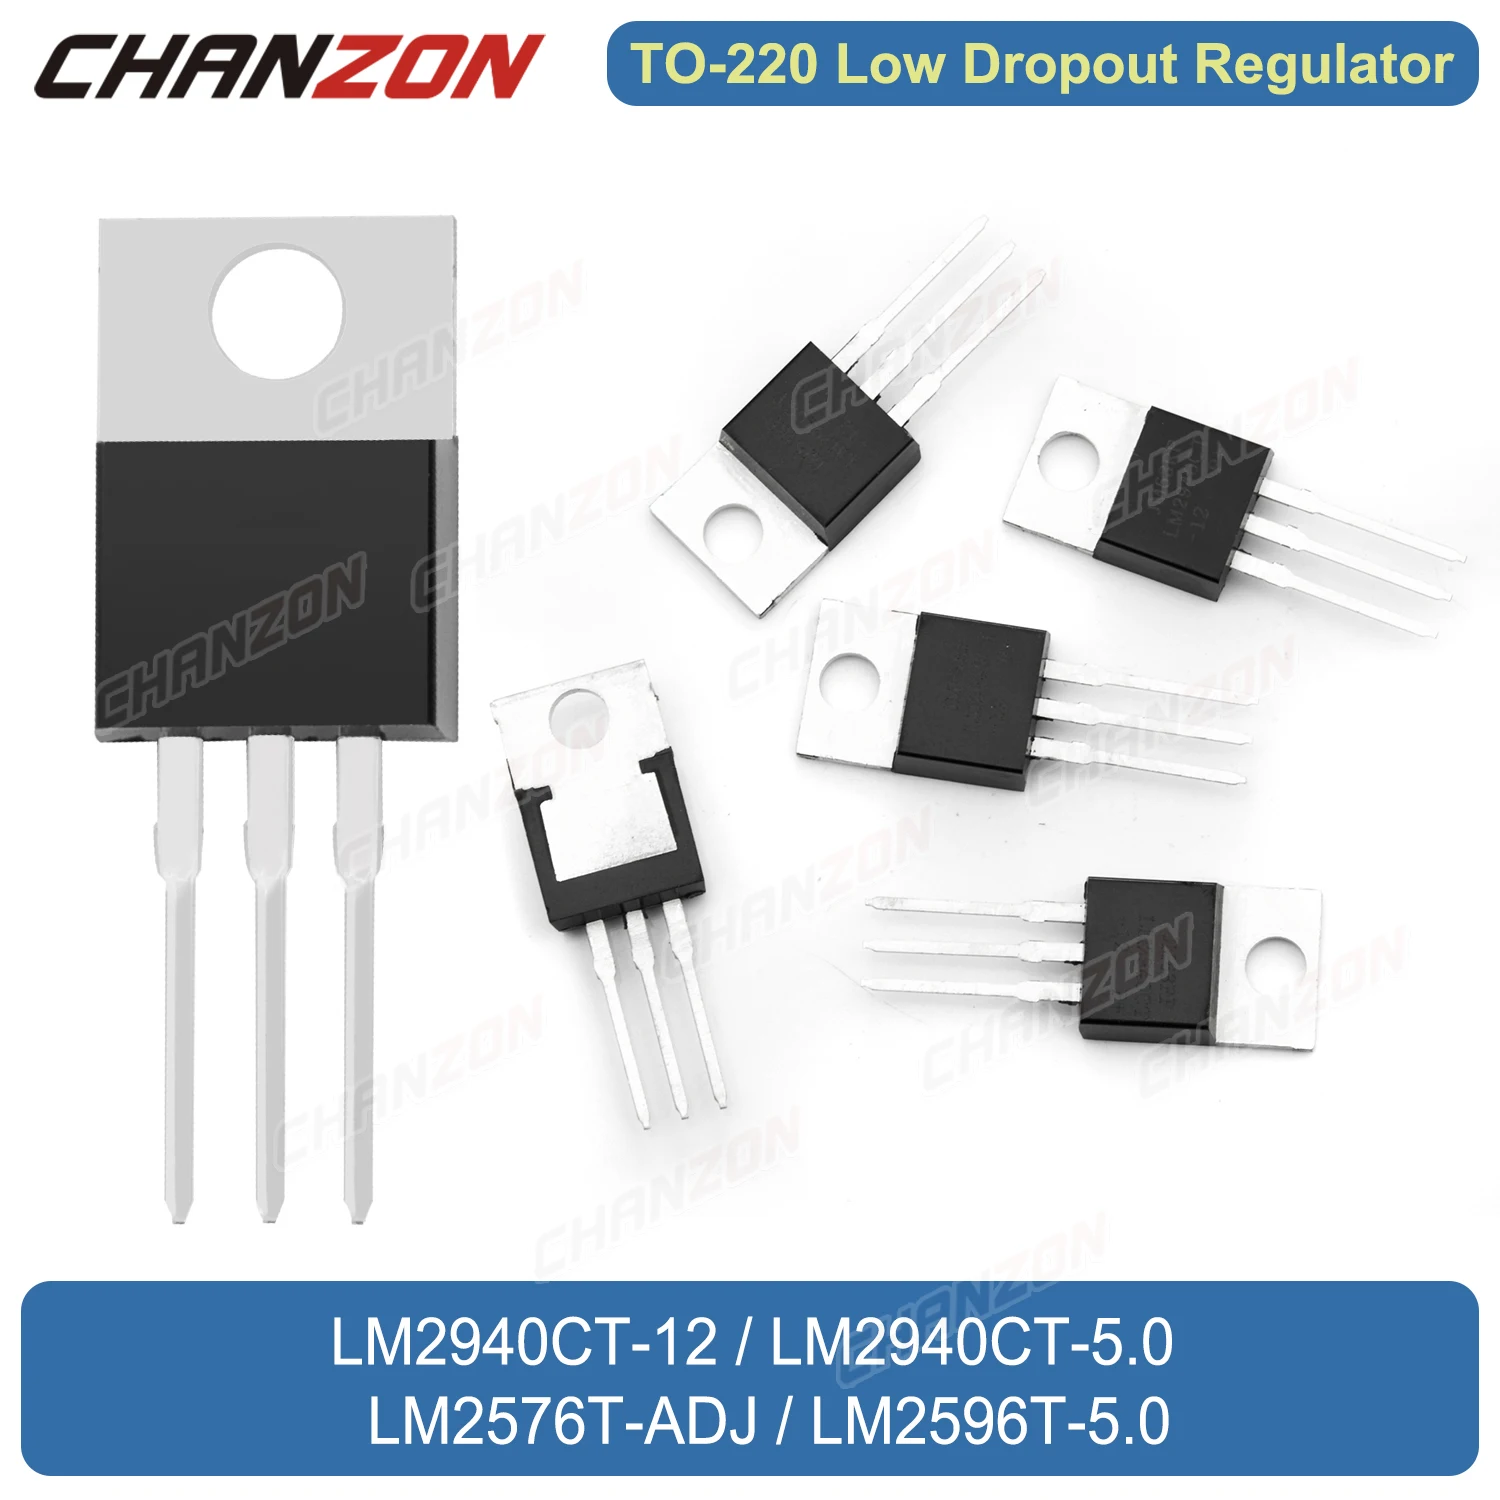 

TO-220 LM2940CT-12 LM2940CT-5.0 LM2576T-ADJ LM2596T-5.0 LM2940CT-5 Low Dropout Regulator Step-Down Voltage Regulator Transistor